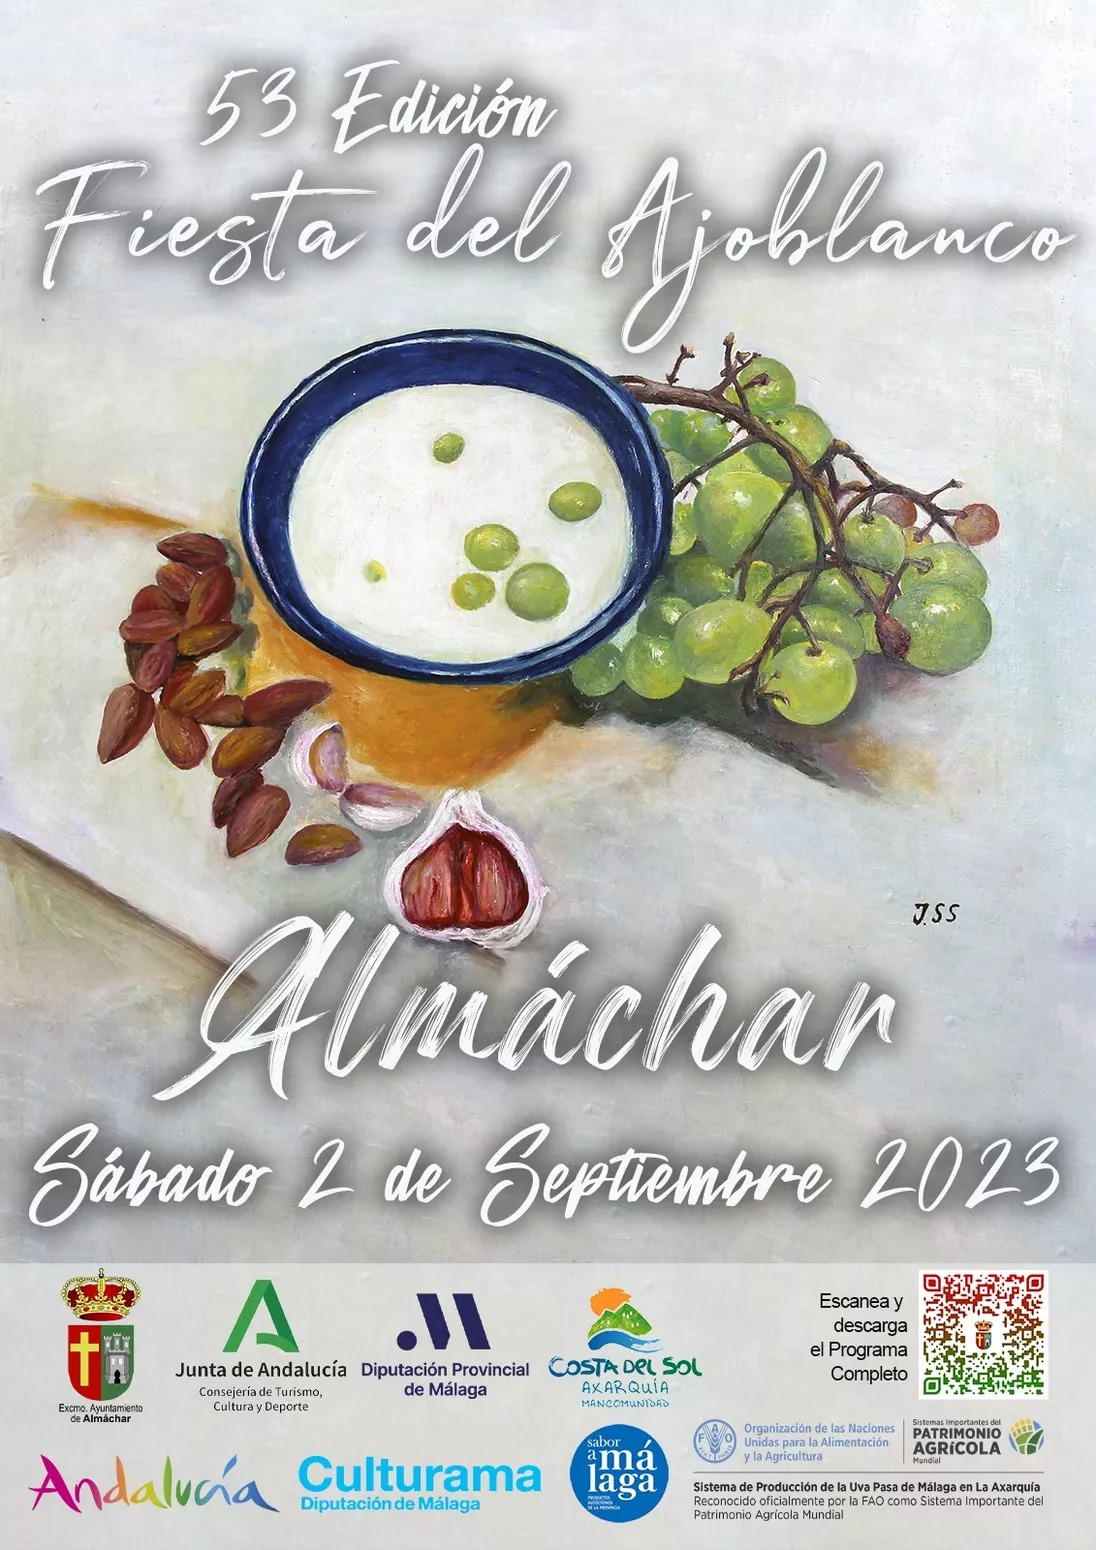 53 Edicion Fiesta del Ajoblanco: Een Viering van Traditie en Smaak in Almáchar